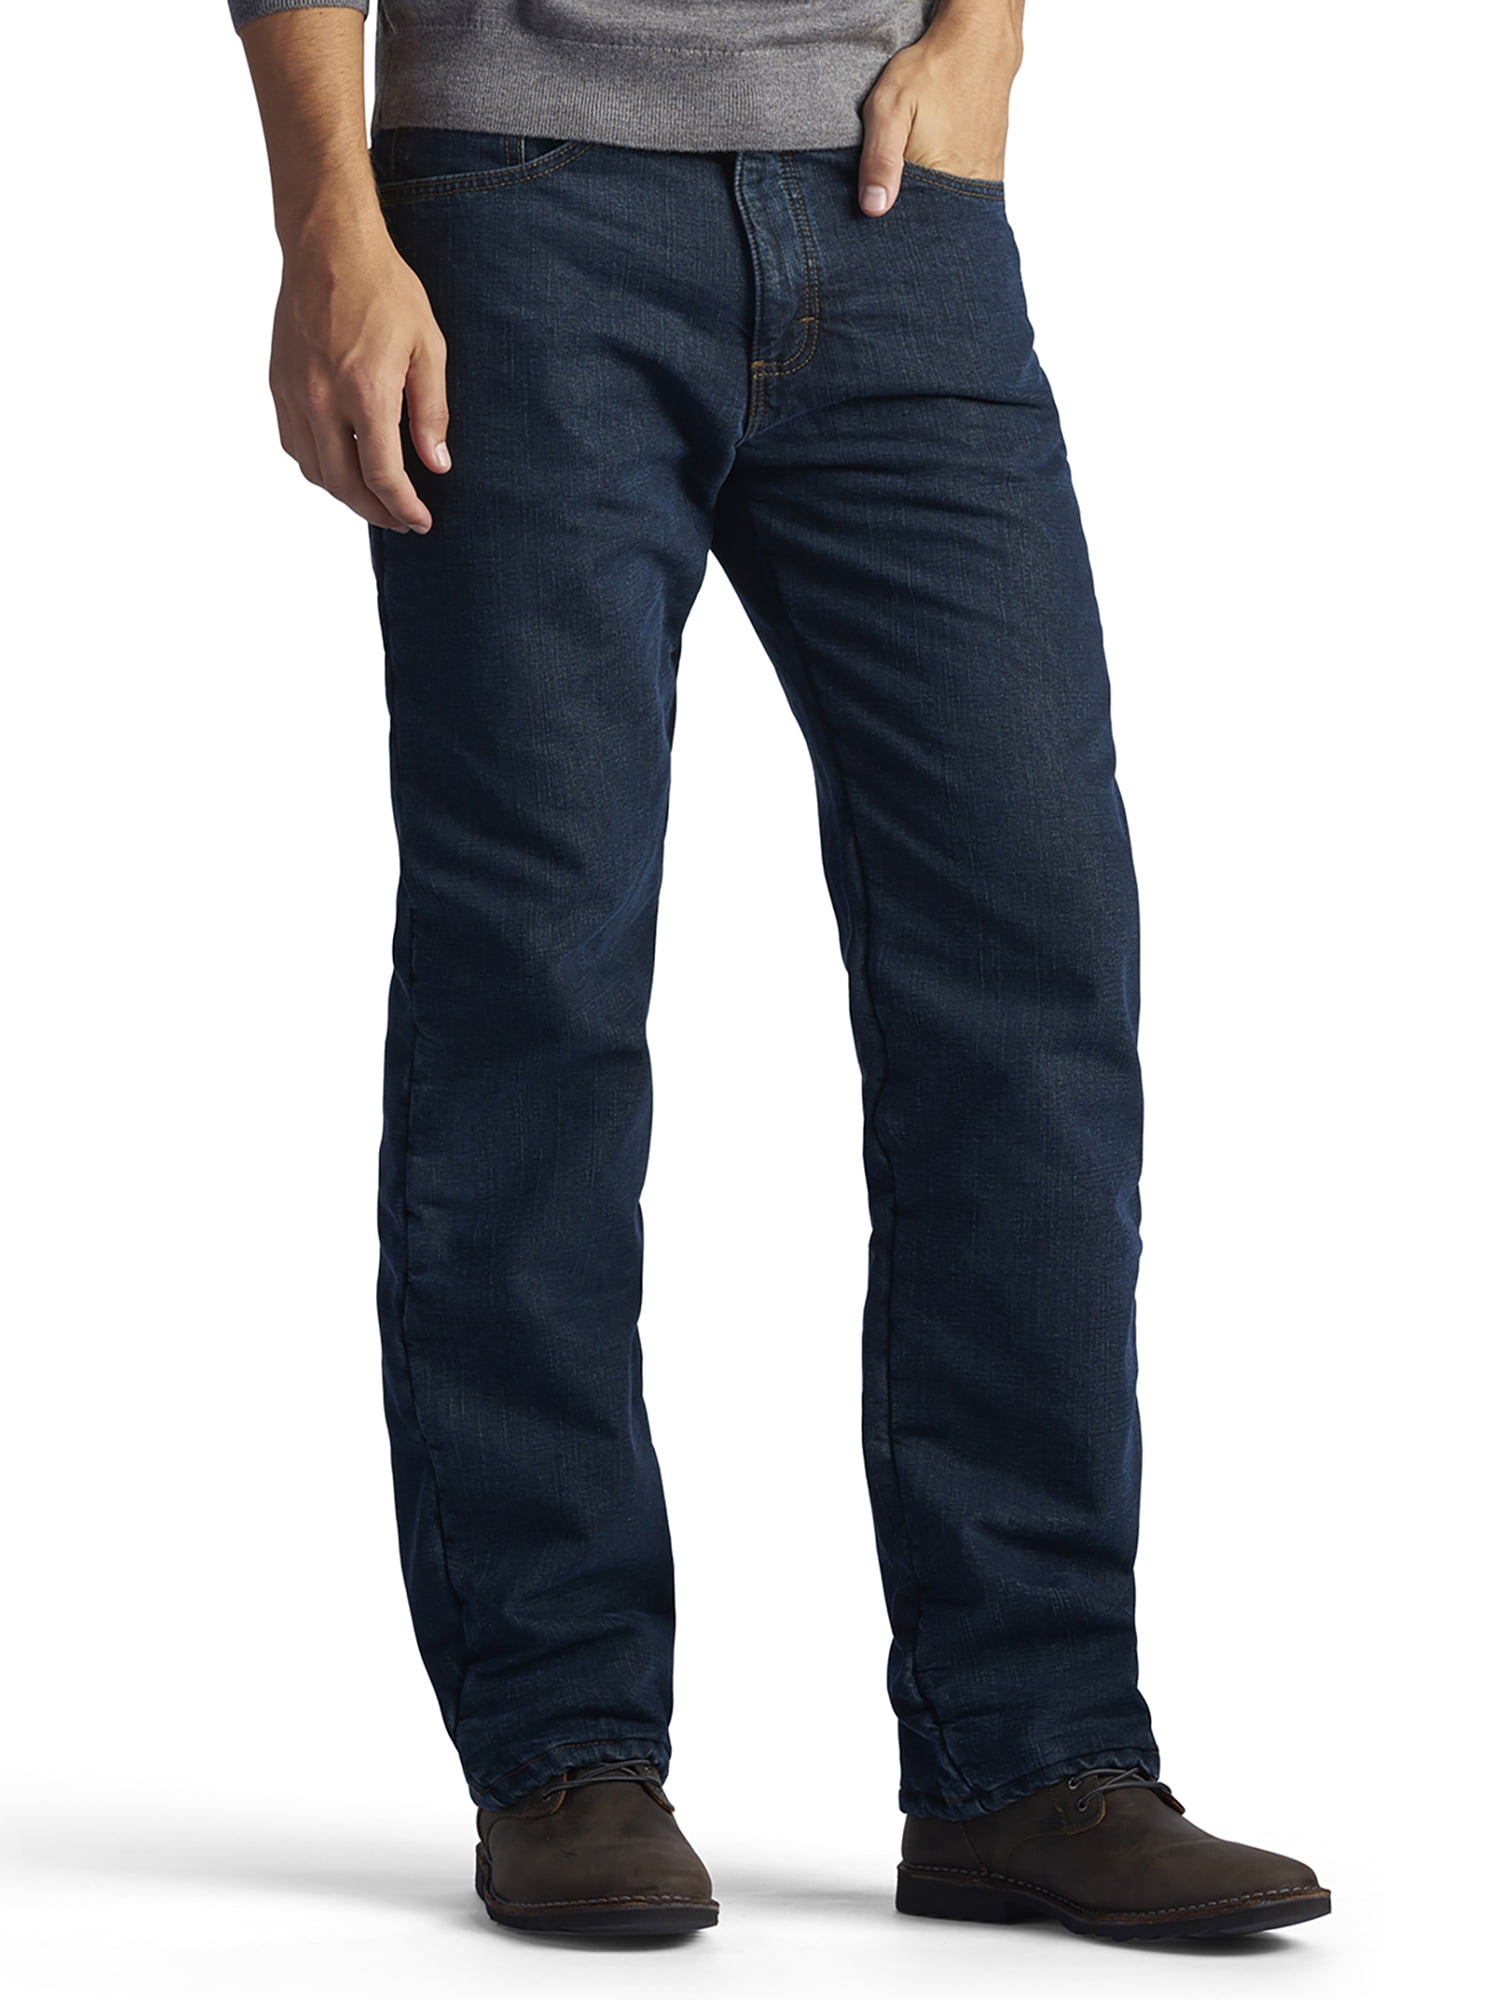 walmart fleece lined jeans